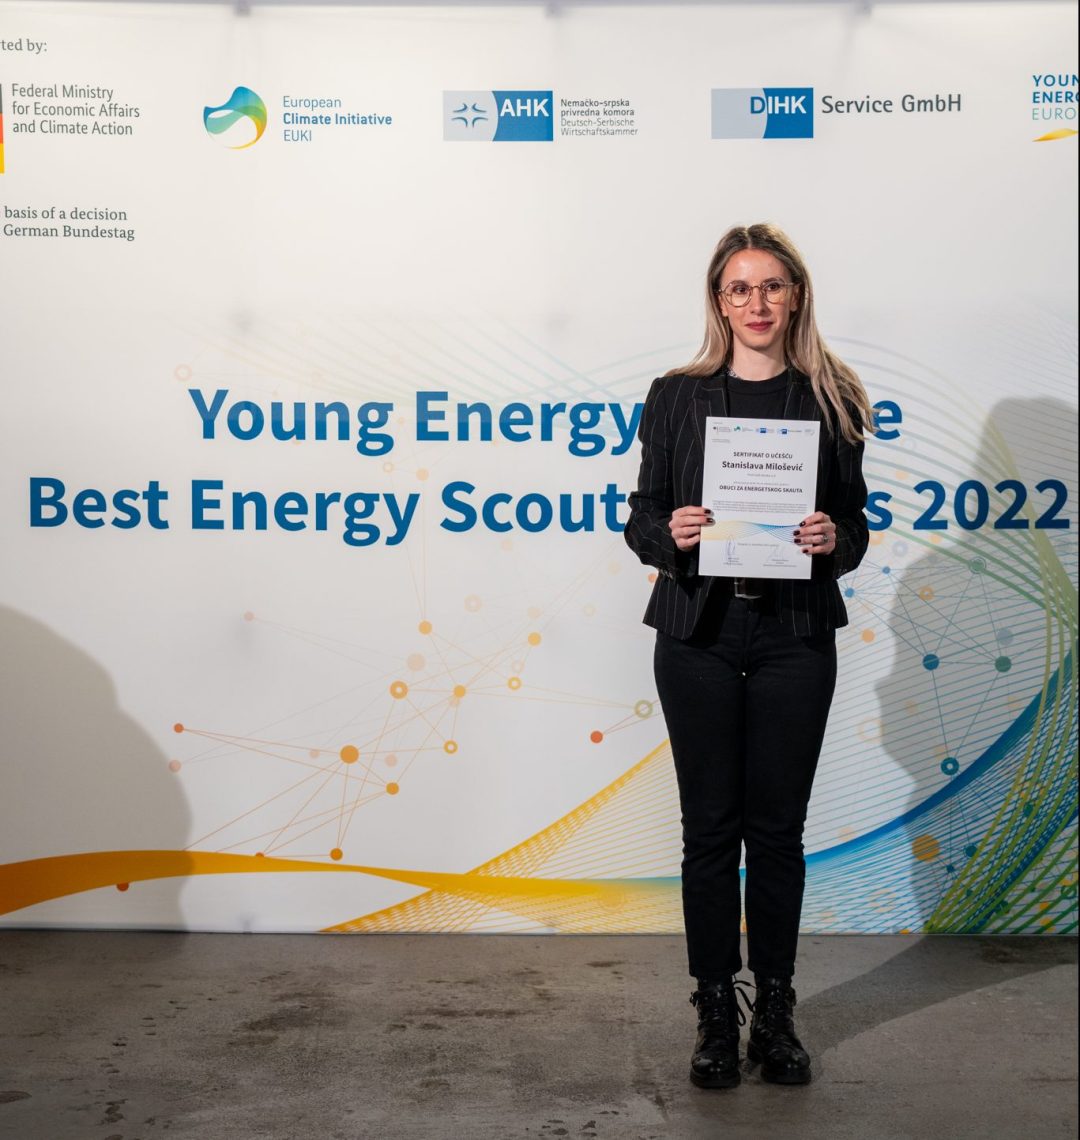 Eine junge Frau steht vor einer Wand auf der Young Energy Europe, EUKI, DIHK Service GmbH und AHK Serbien Logos abgebildet sind und hält eine Urkunde in der Hand.